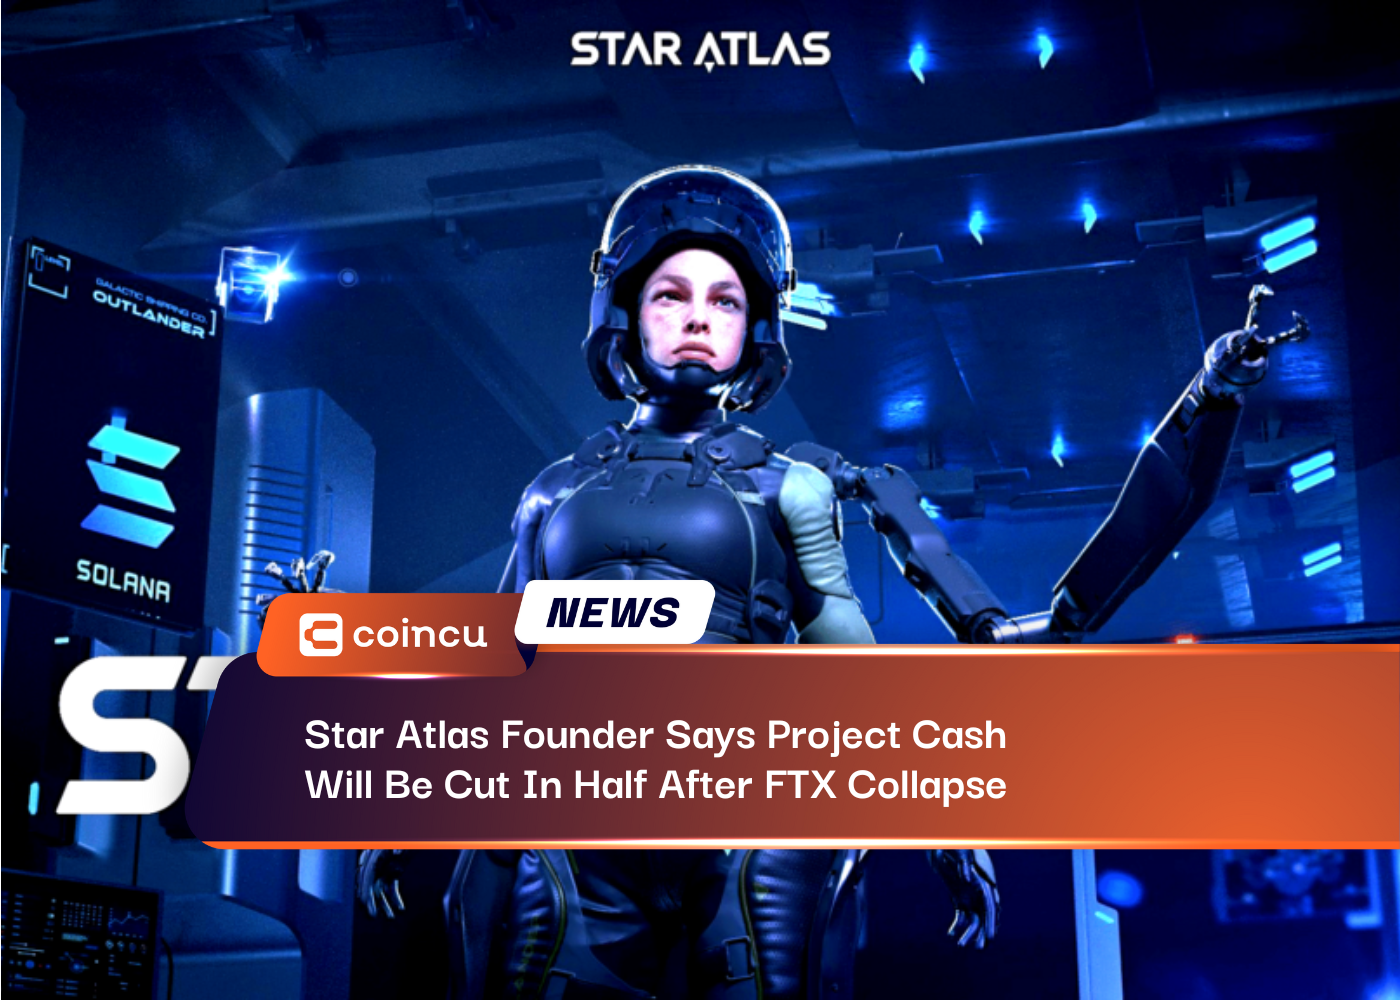 El fundador de Star Atlas dice que el efectivo del proyecto se reducirá a la mitad después del colapso de FTX